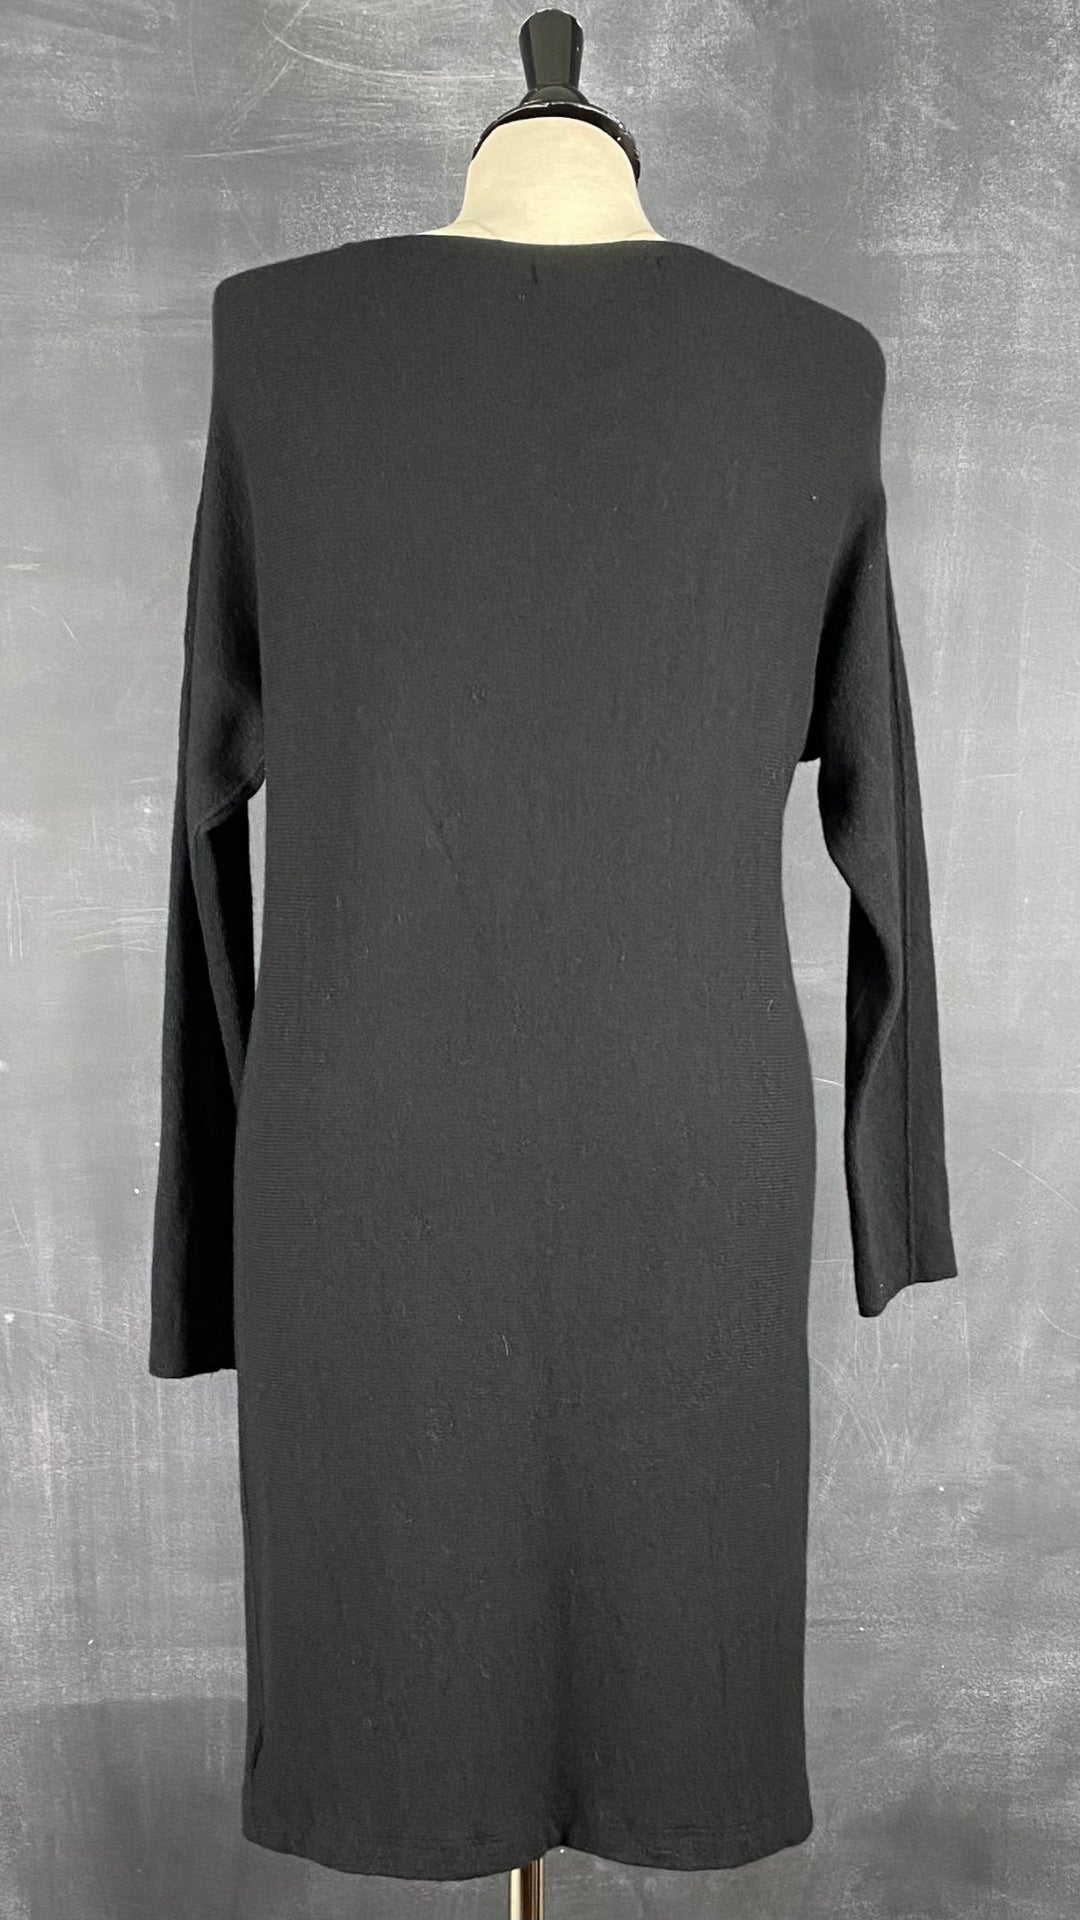 Robe tunique en tricot noir La fée Maraboutée, taille small (1). Vue de dos.